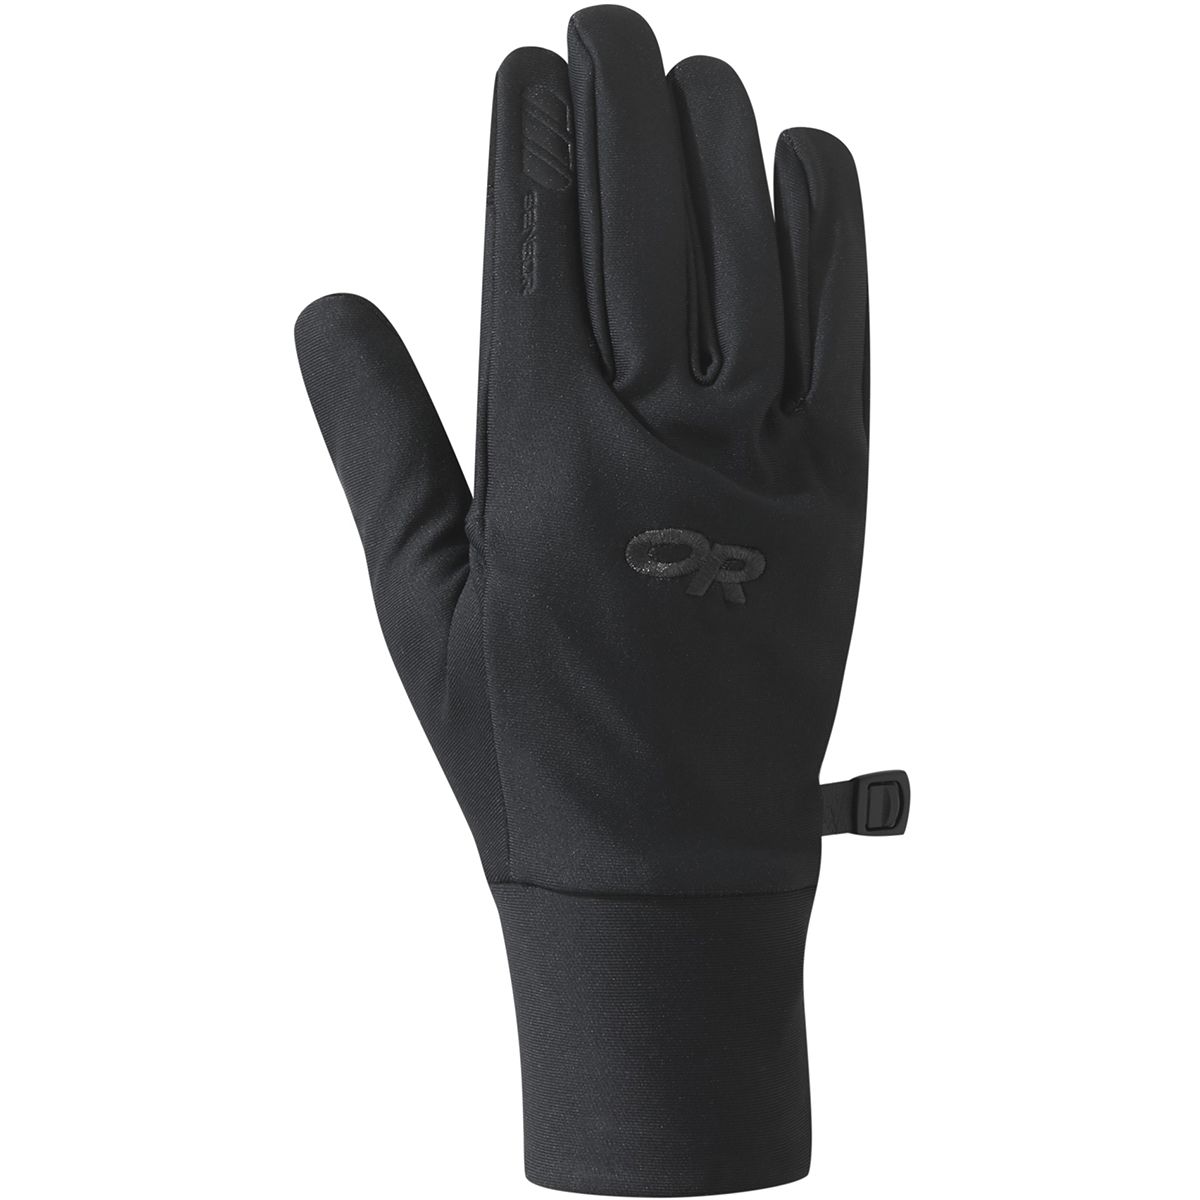 Outdoor Research Vigor Lightweight Sensor Glove - Women's